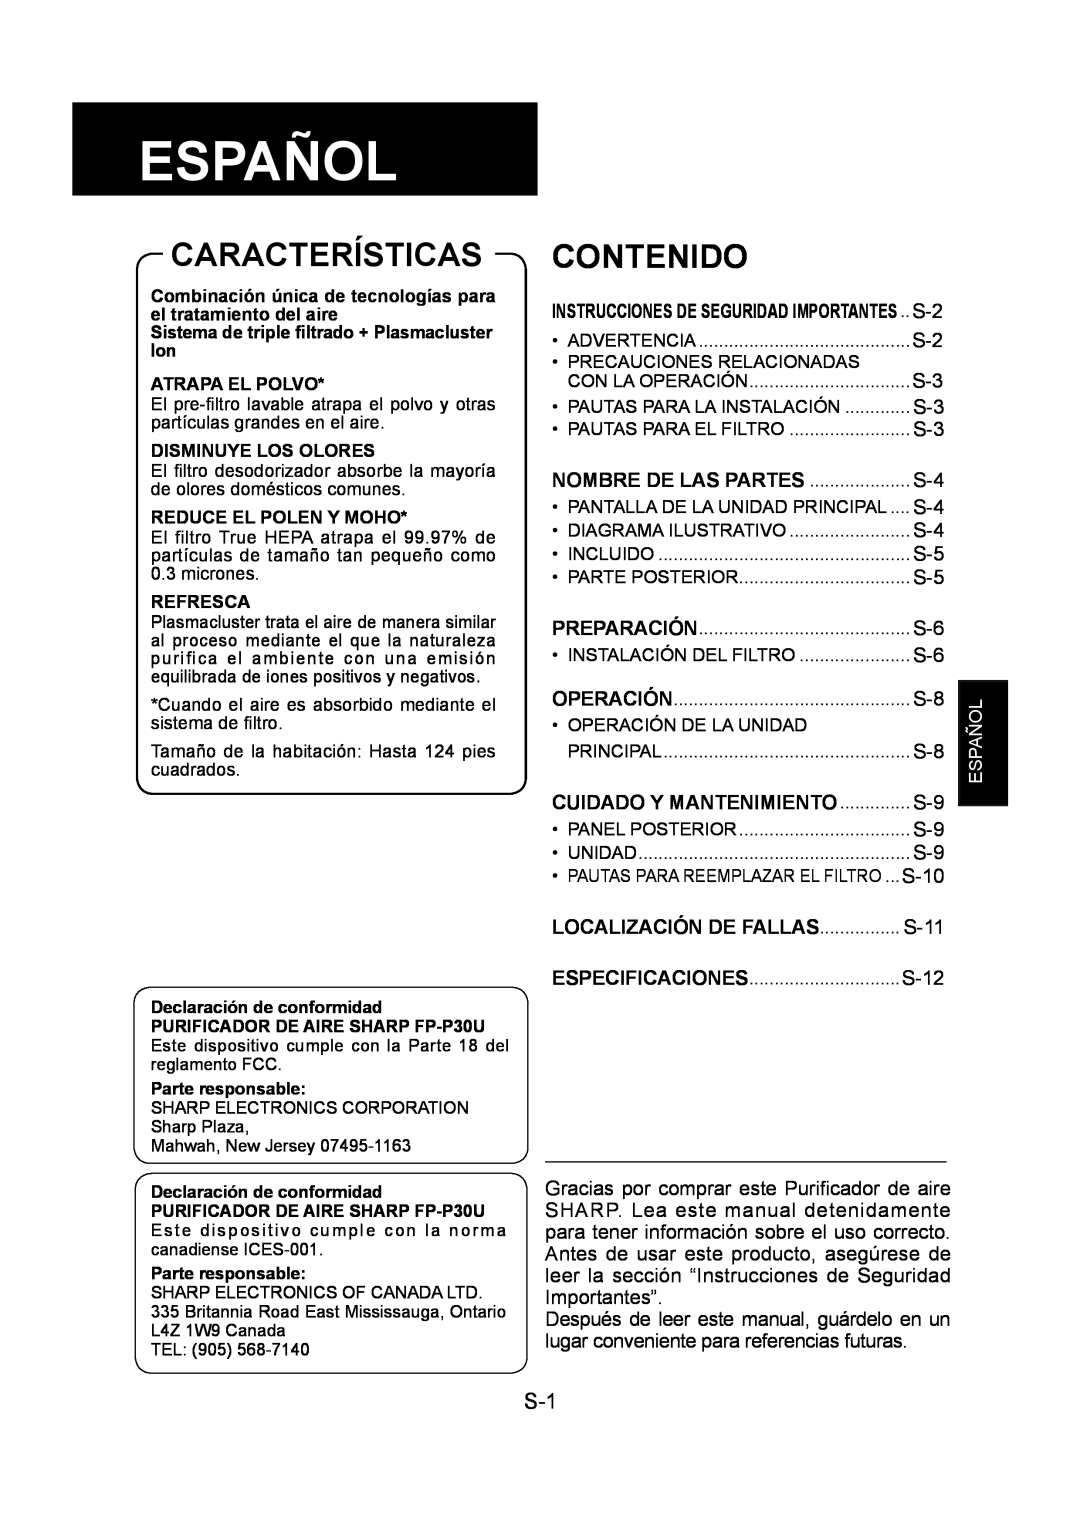 Sharp FP-P30U operation manual Español, Características, Contenido, Localización De Fallas 